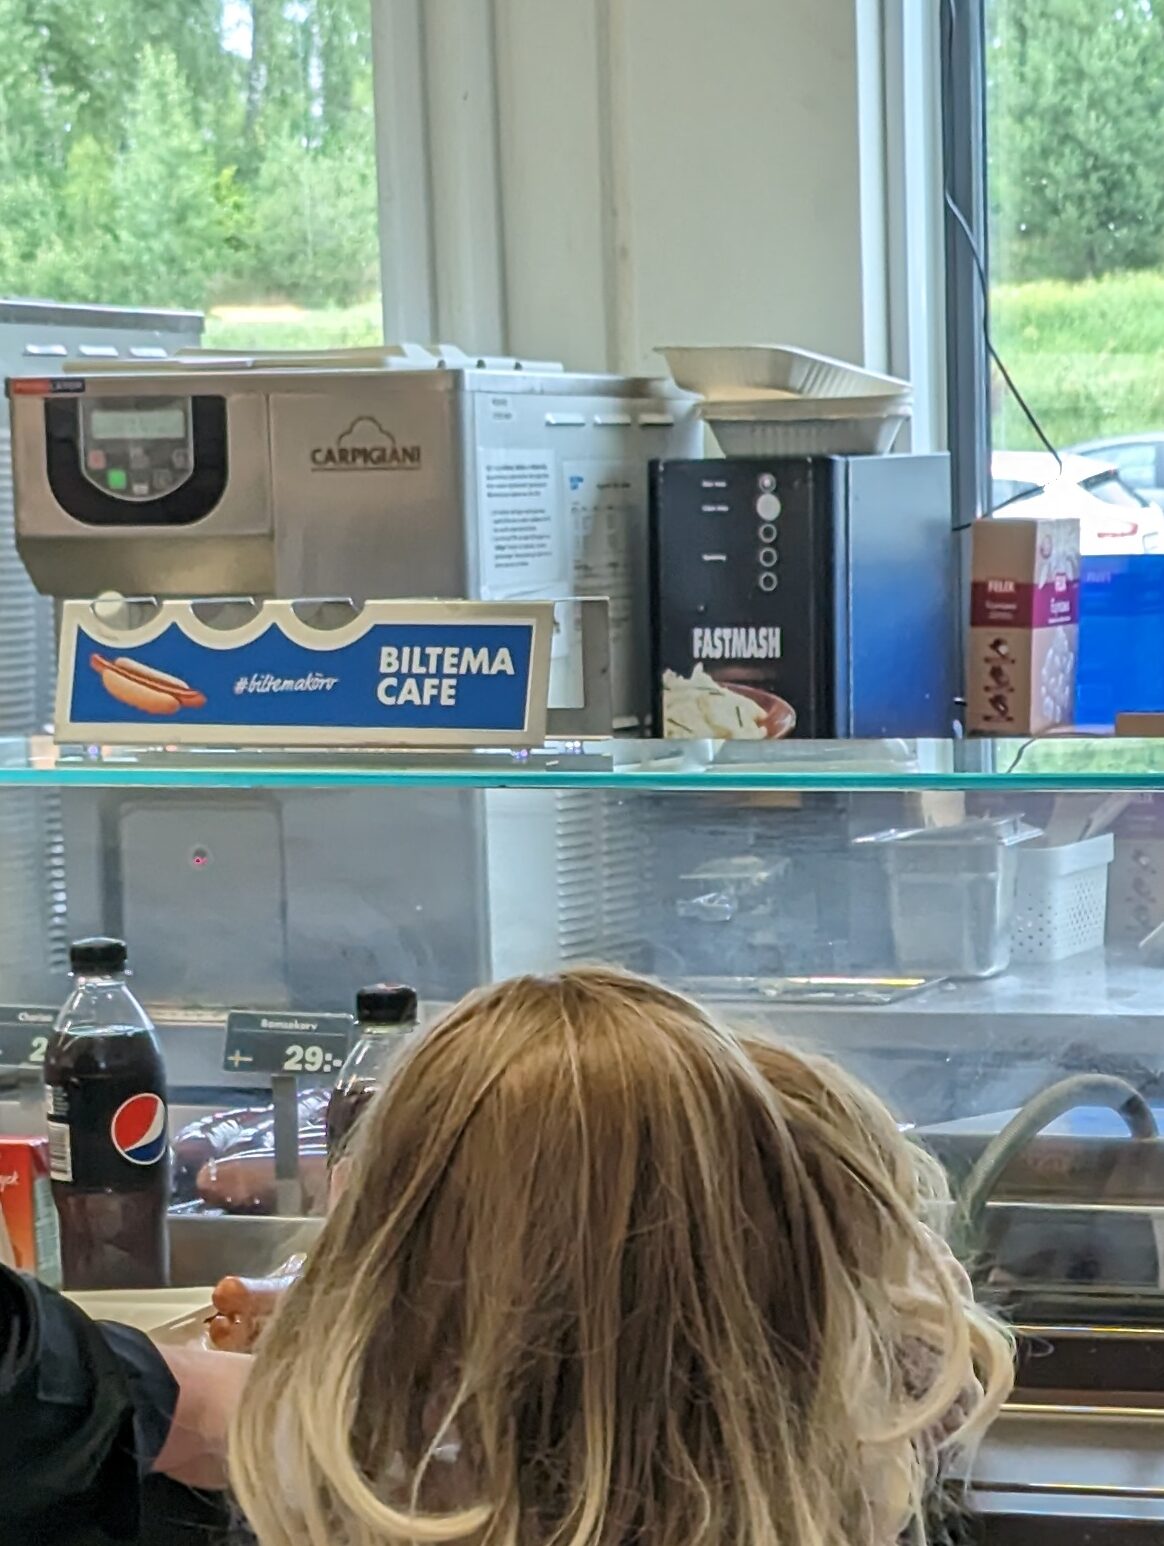 Ein Kind vor einer Theke eines Imbis, dahinter ist eine Maschine zu erkennen, die an einen Wasserspender erinnert, schwarze Front mit vier Knöpfen in Daumengröße, die Aufschrift FASTMASH